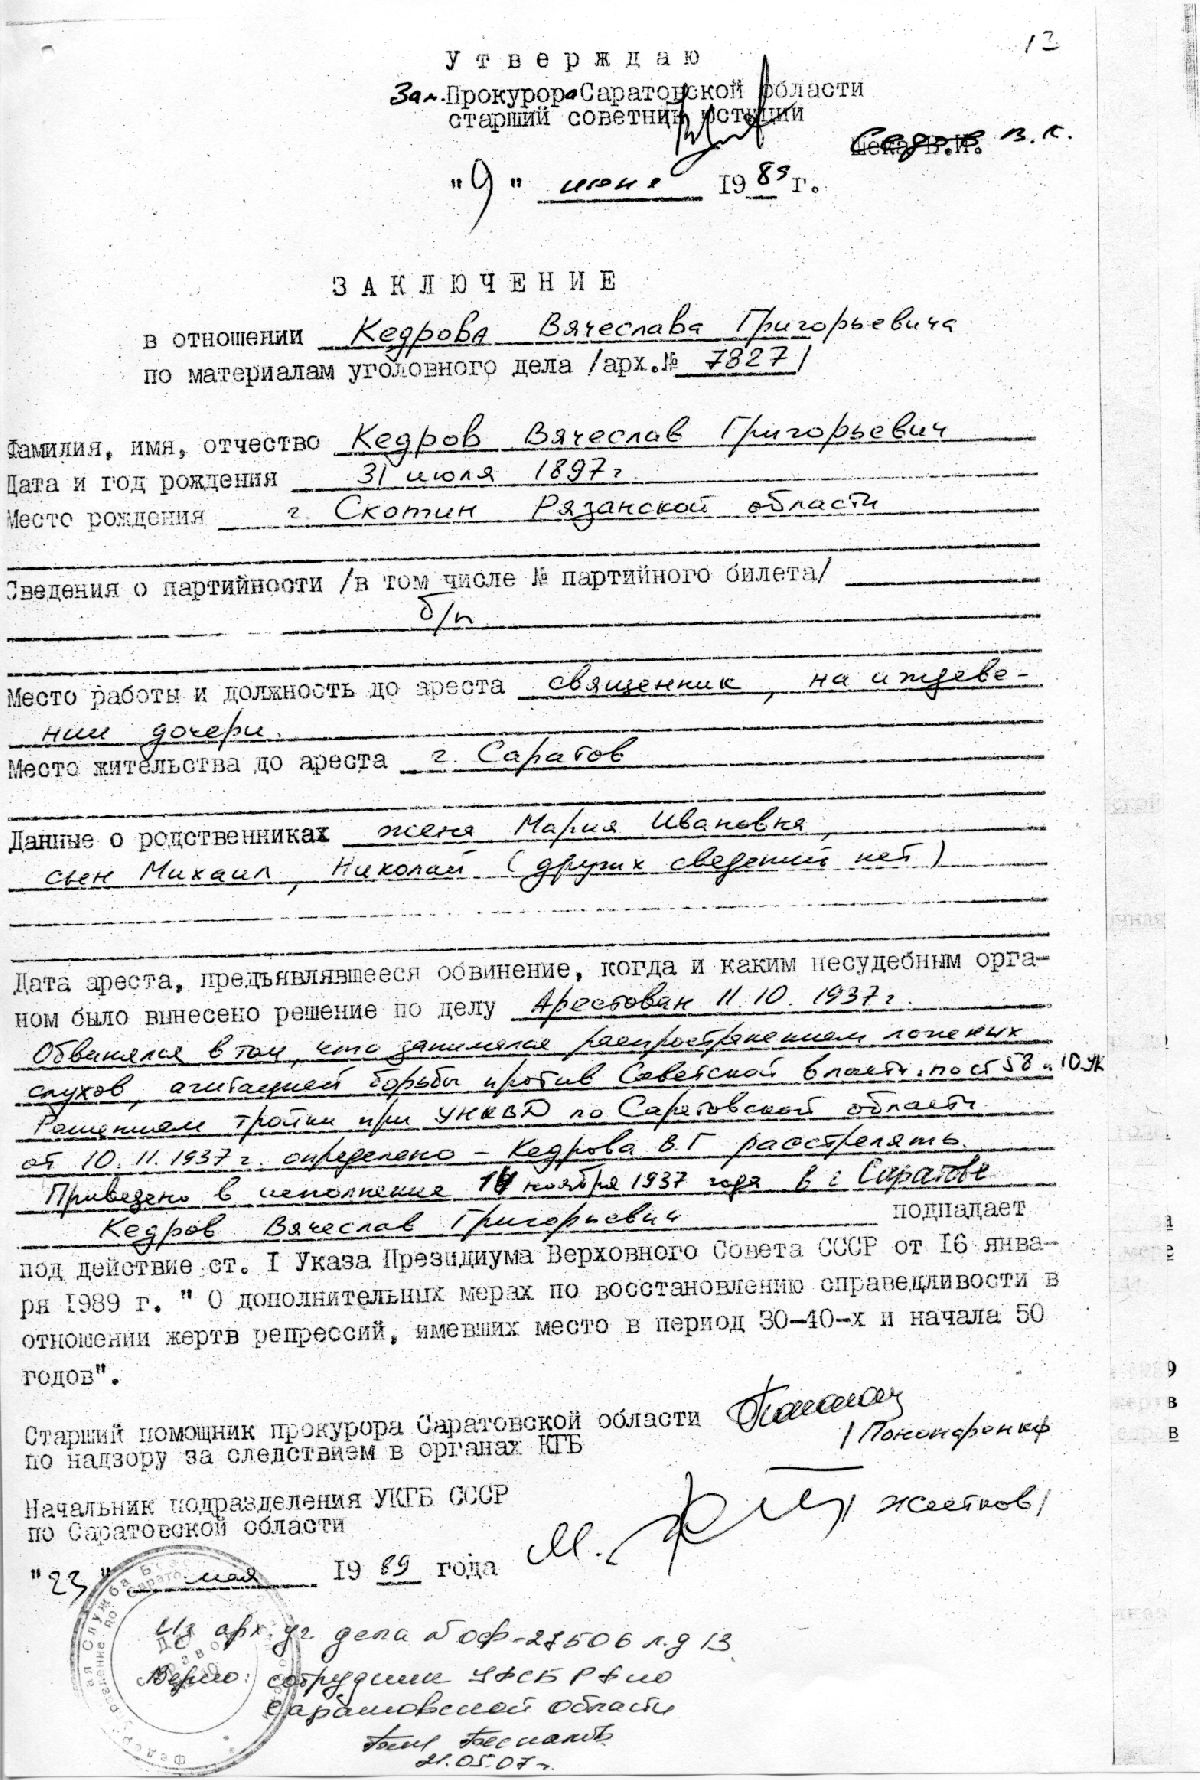 Дело 1937 г. Архив УФСБ по Саратовской области. Арх. № ОФ-27506 (№ 12707).